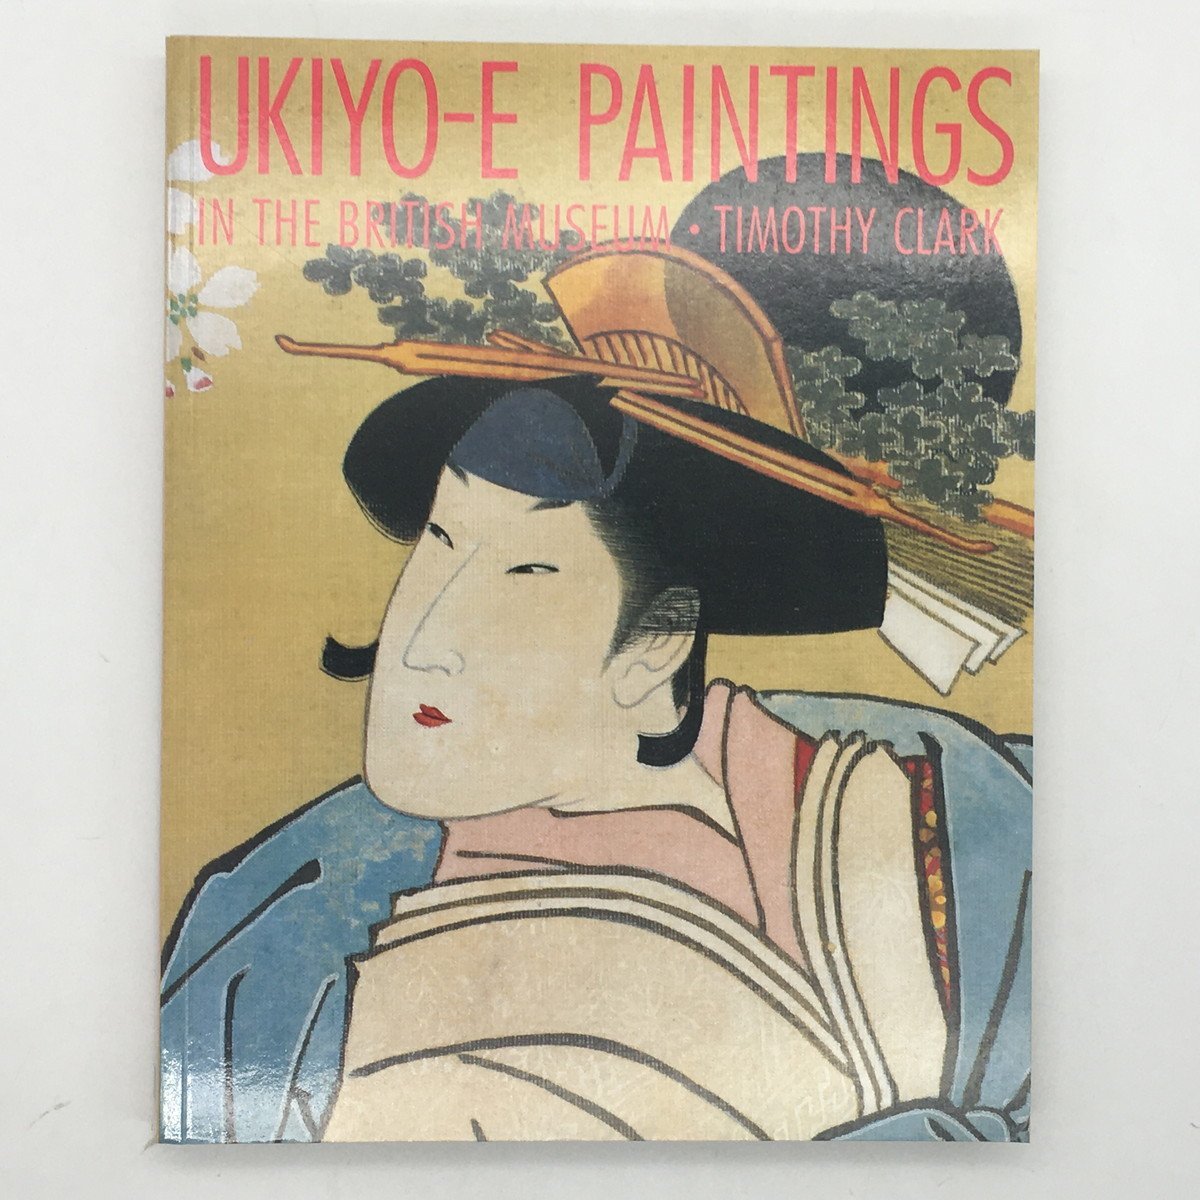 [उकियो-ई] ब्रिटिश संग्रहालय में उकियो-ई पेंटिंग टिमोथी क्लार्क 1992 200 प्लेटें पूर्ण रंग ☆ 7yn9 द्वारा जापानी पेंटिंग, चित्रकारी, कला पुस्तक, संग्रह, कला पुस्तक